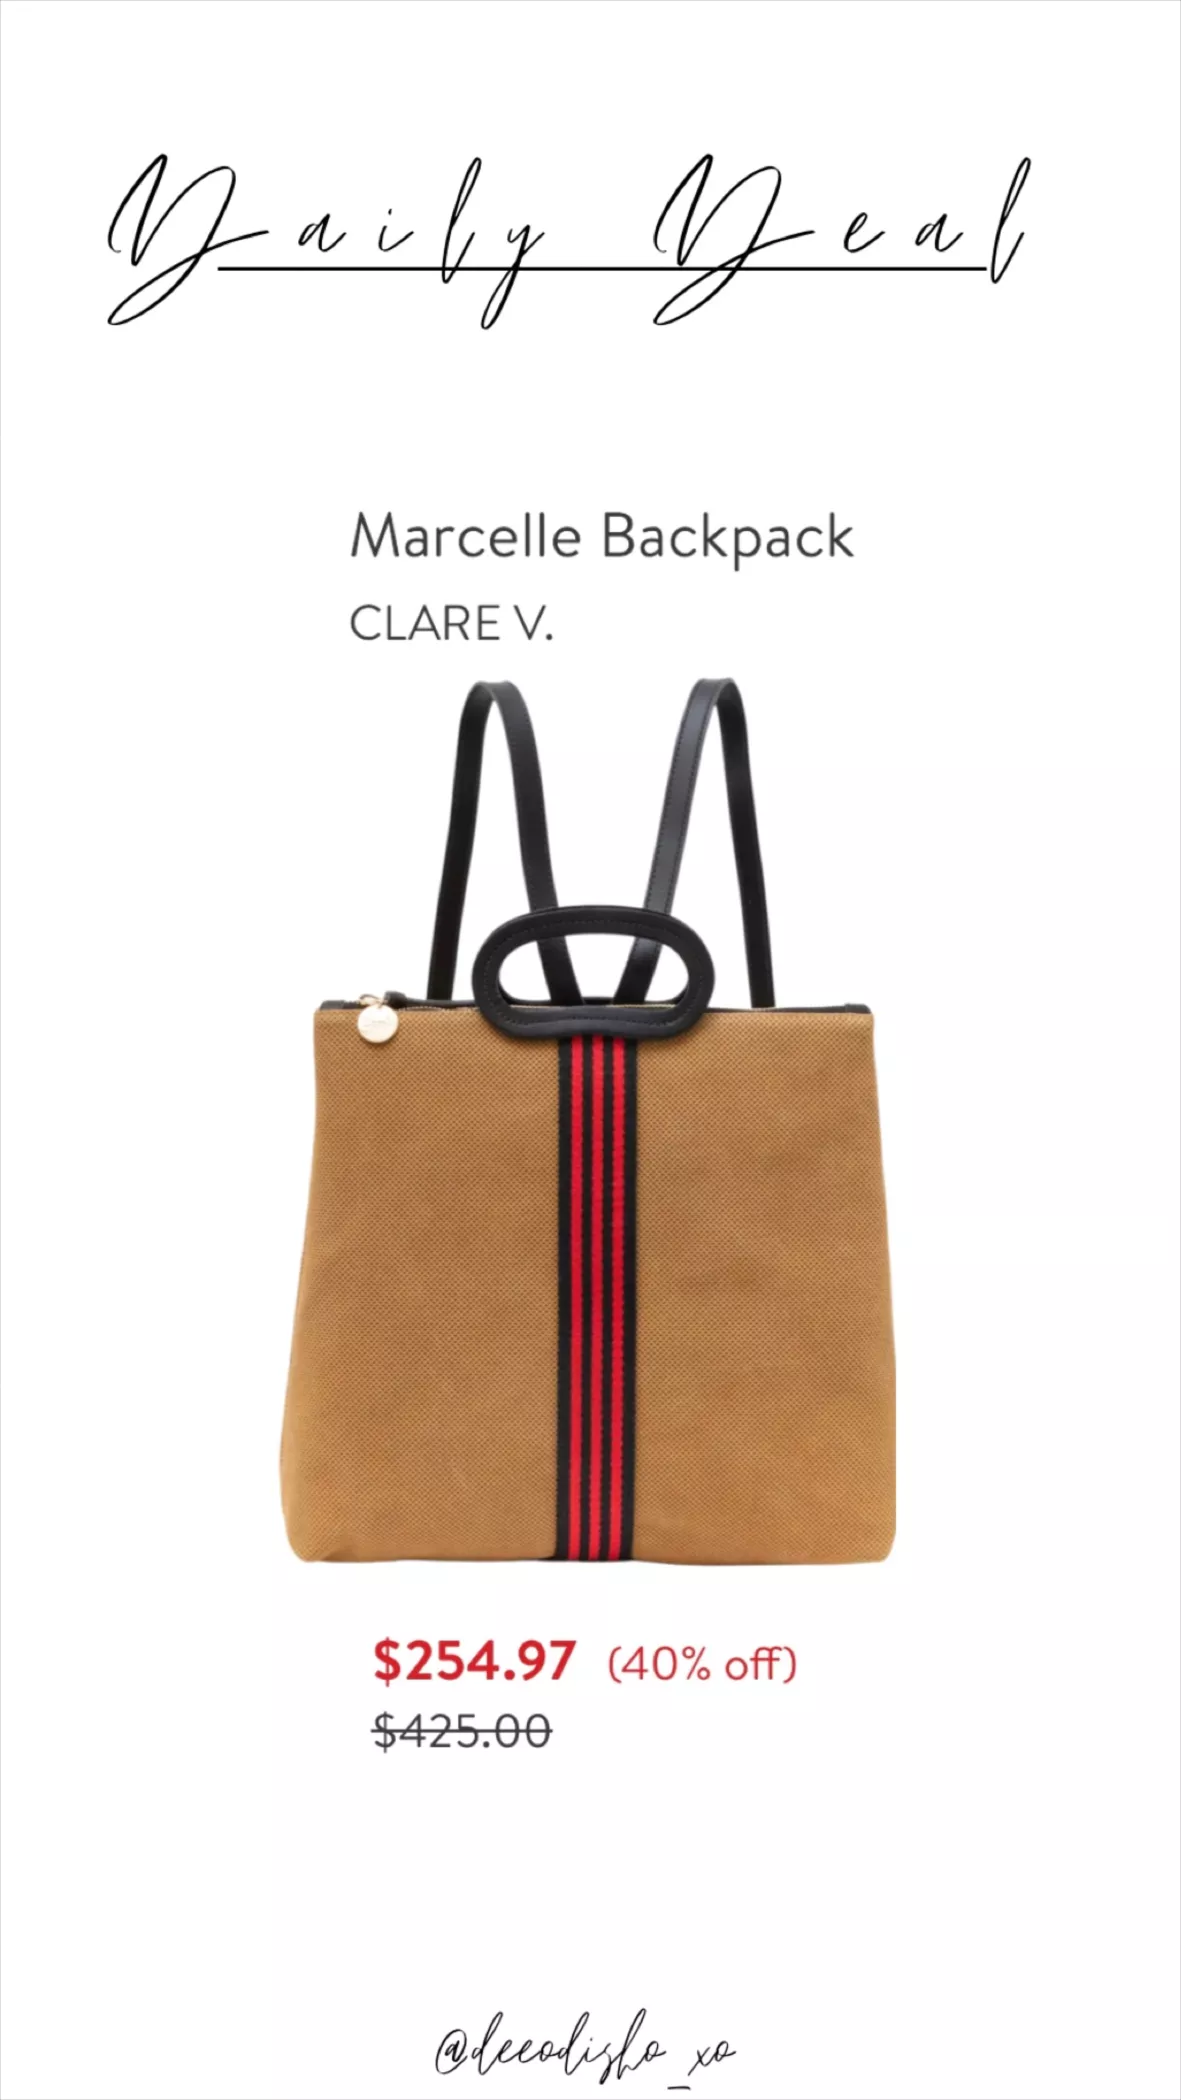 Clare V. Marcelle Backpack